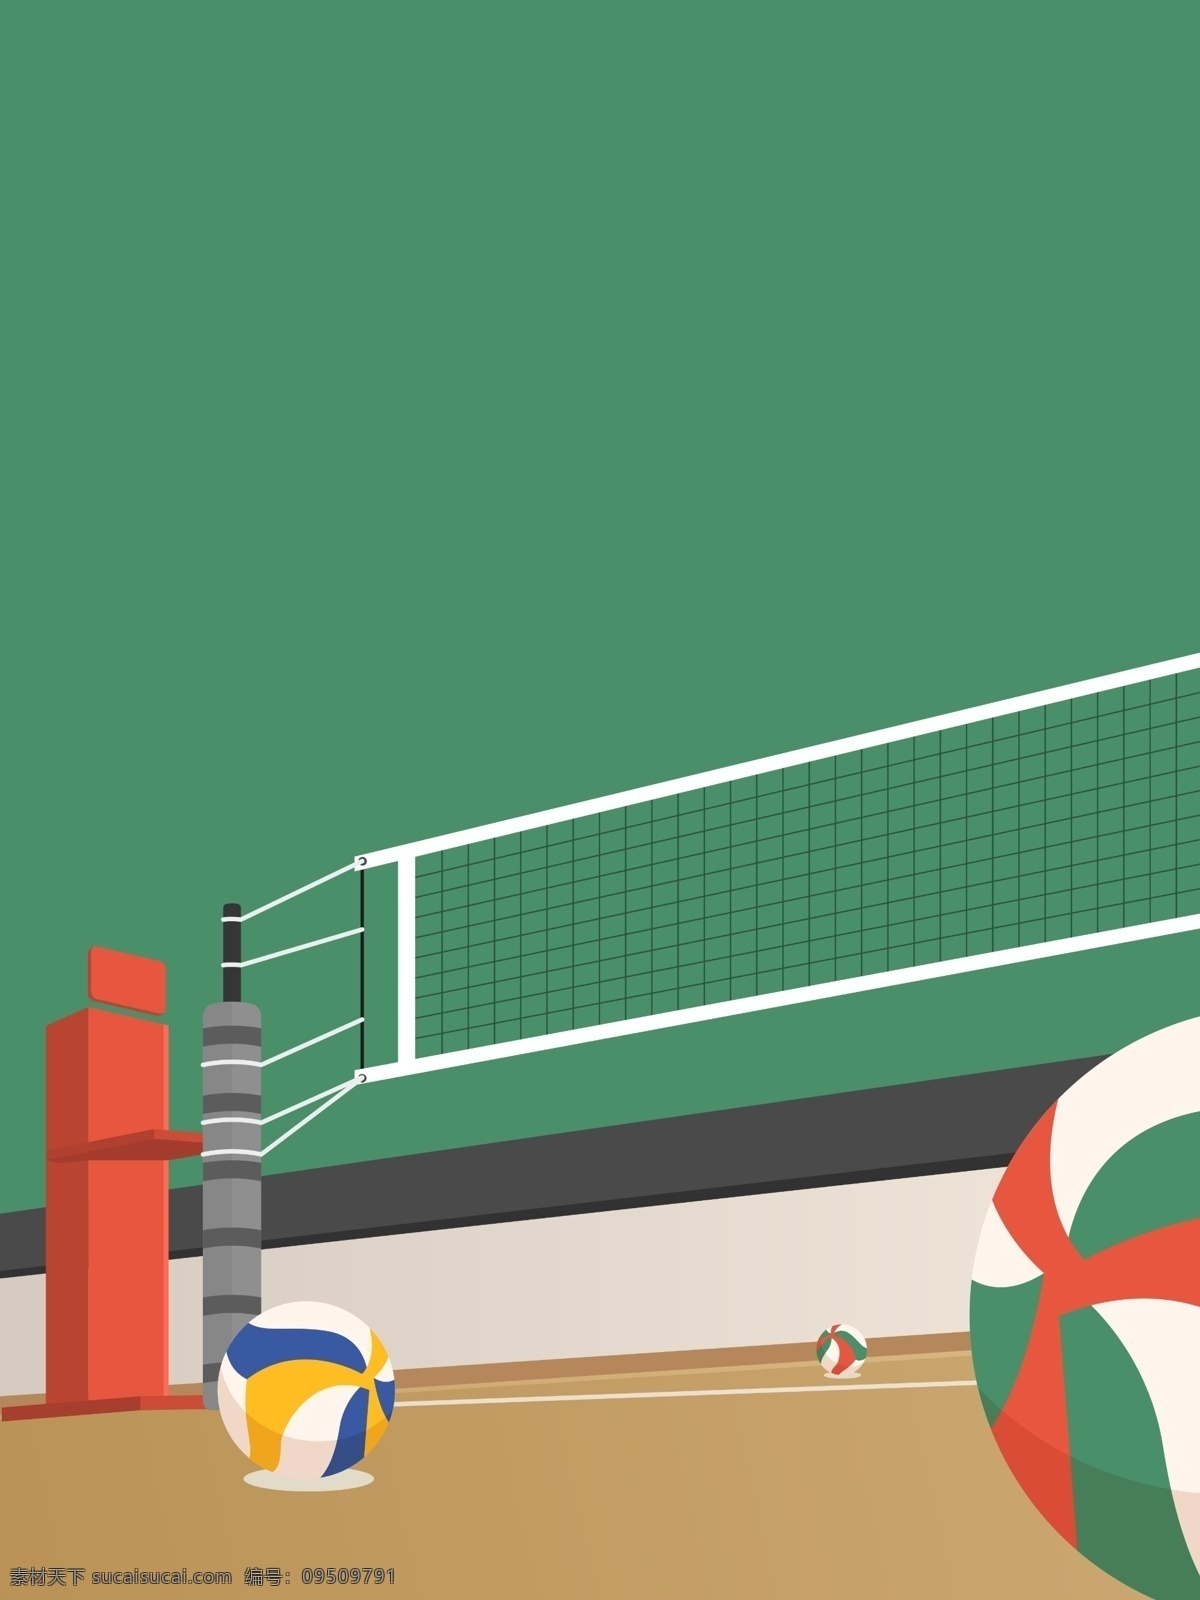 卡通 女排 争霸 体育 比赛 背景 绿色背景 比赛背景 广告背景 竞赛背景 手绘背景 通用背景 排球背景